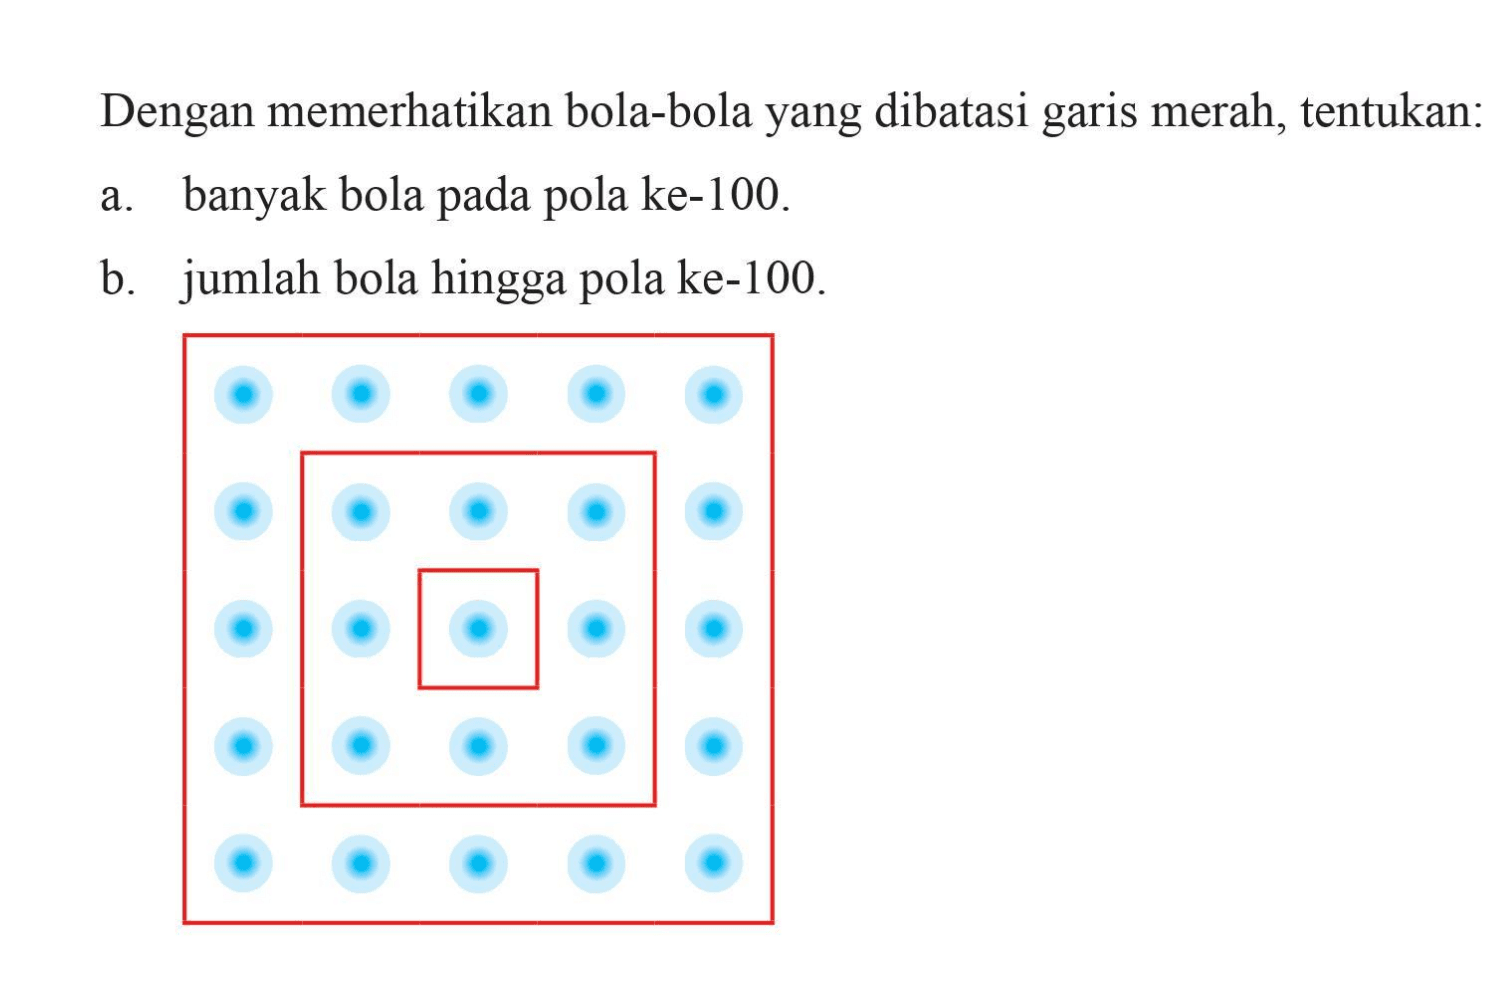 Dengan memerhatikan bola-bola yang dibatasi garis merah, tentukan: a. banyak bola pada pola ke-100. b. jumlah bola hingga pola ke-100.